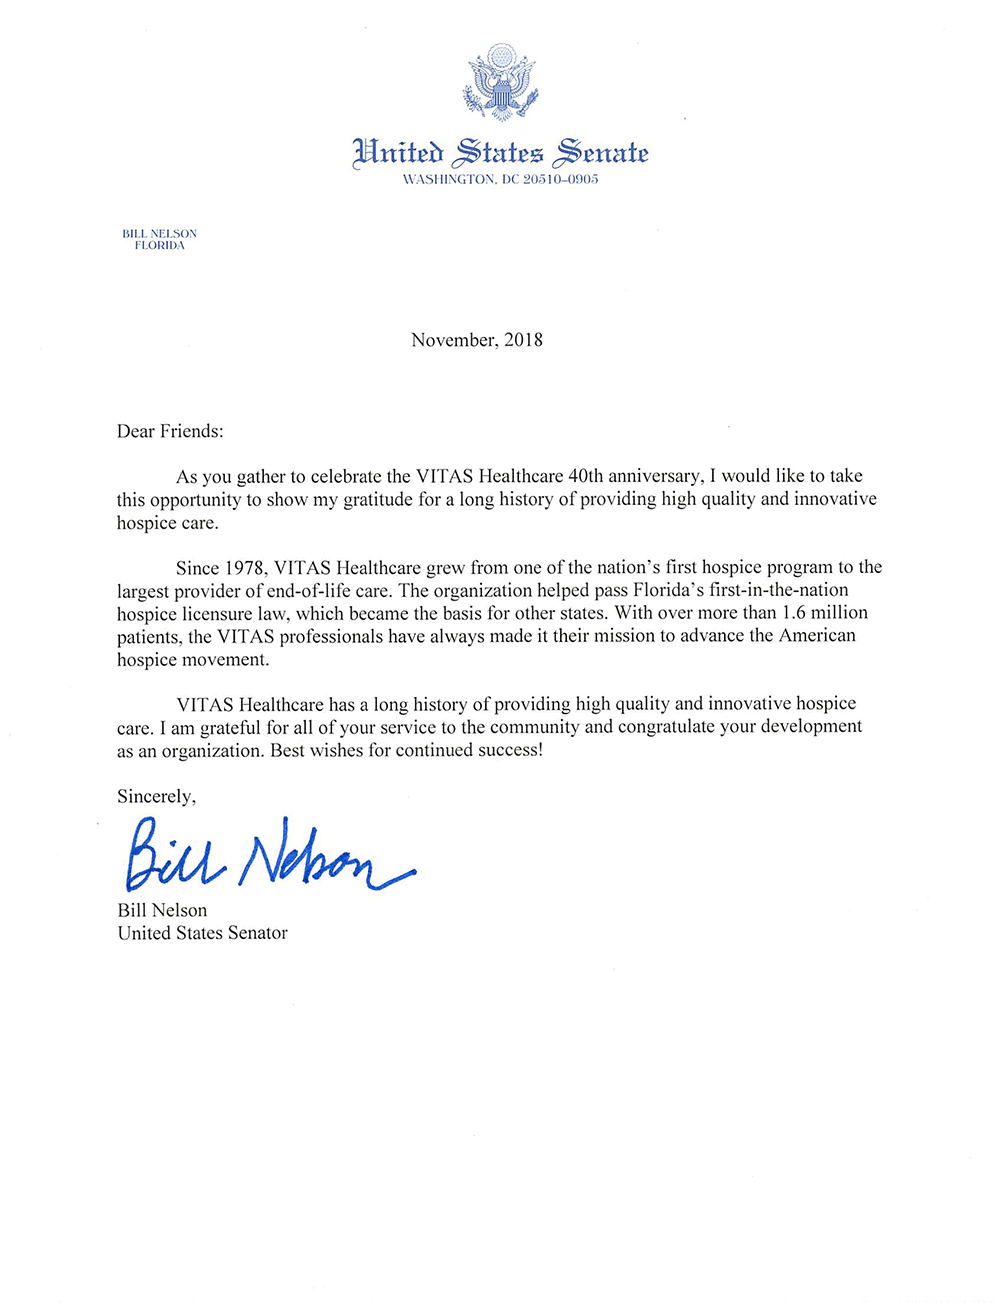 Letter to VITAS from US Senator Bill Nelson